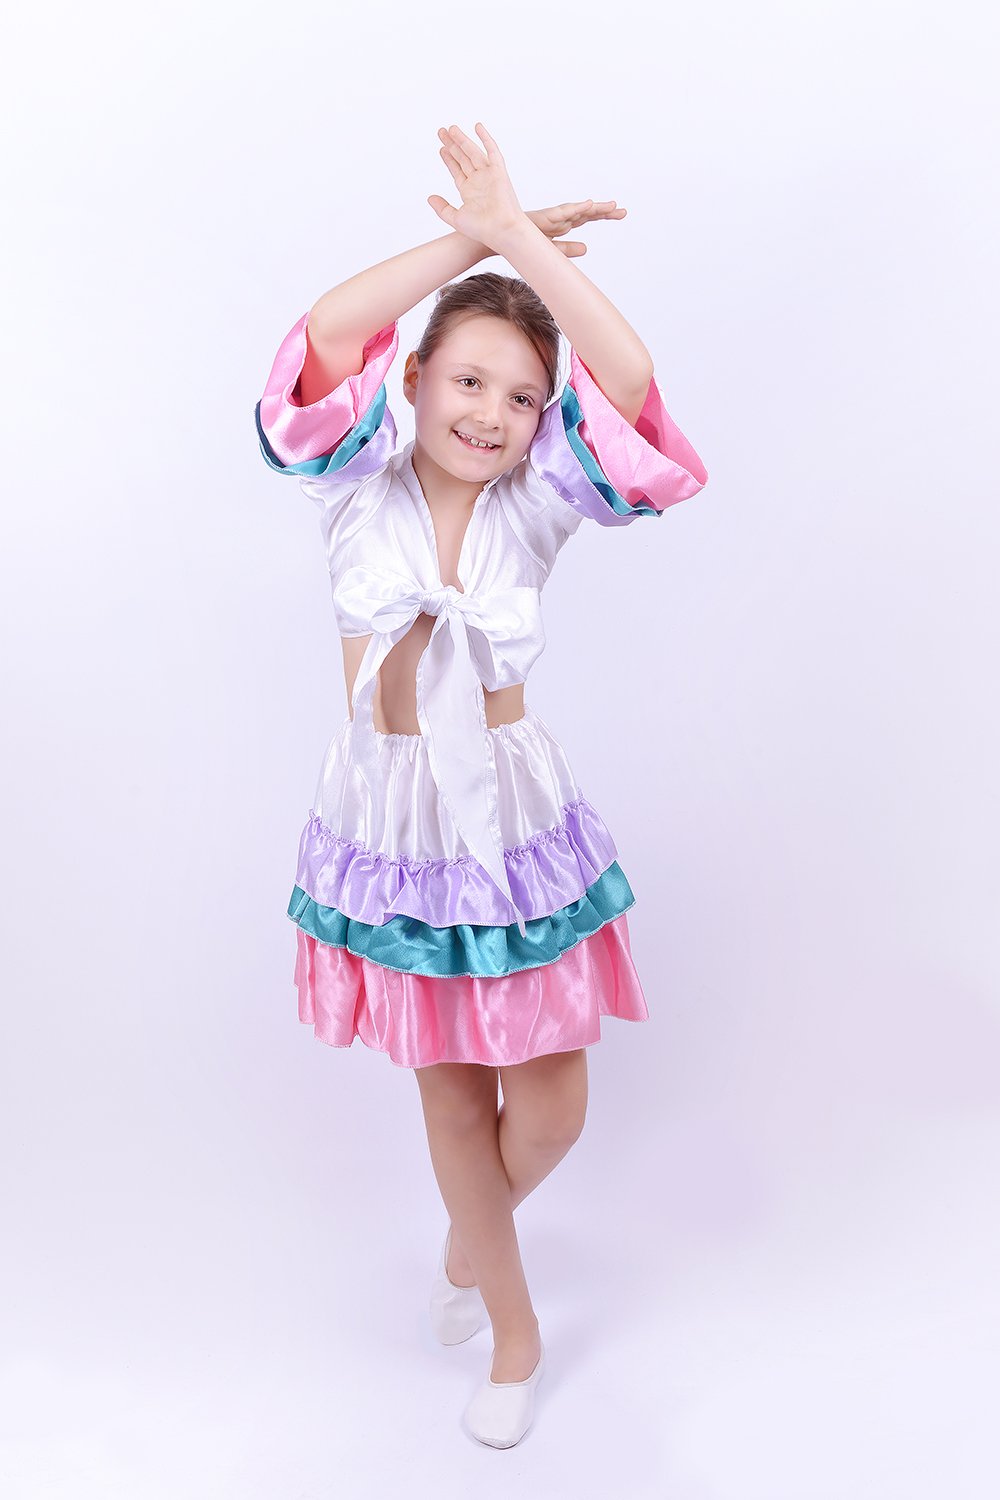 Rengarenk Bolerolu Dans Kostümü, Kız Çocuk Bolerolu Flamenko  Dans Kostumu